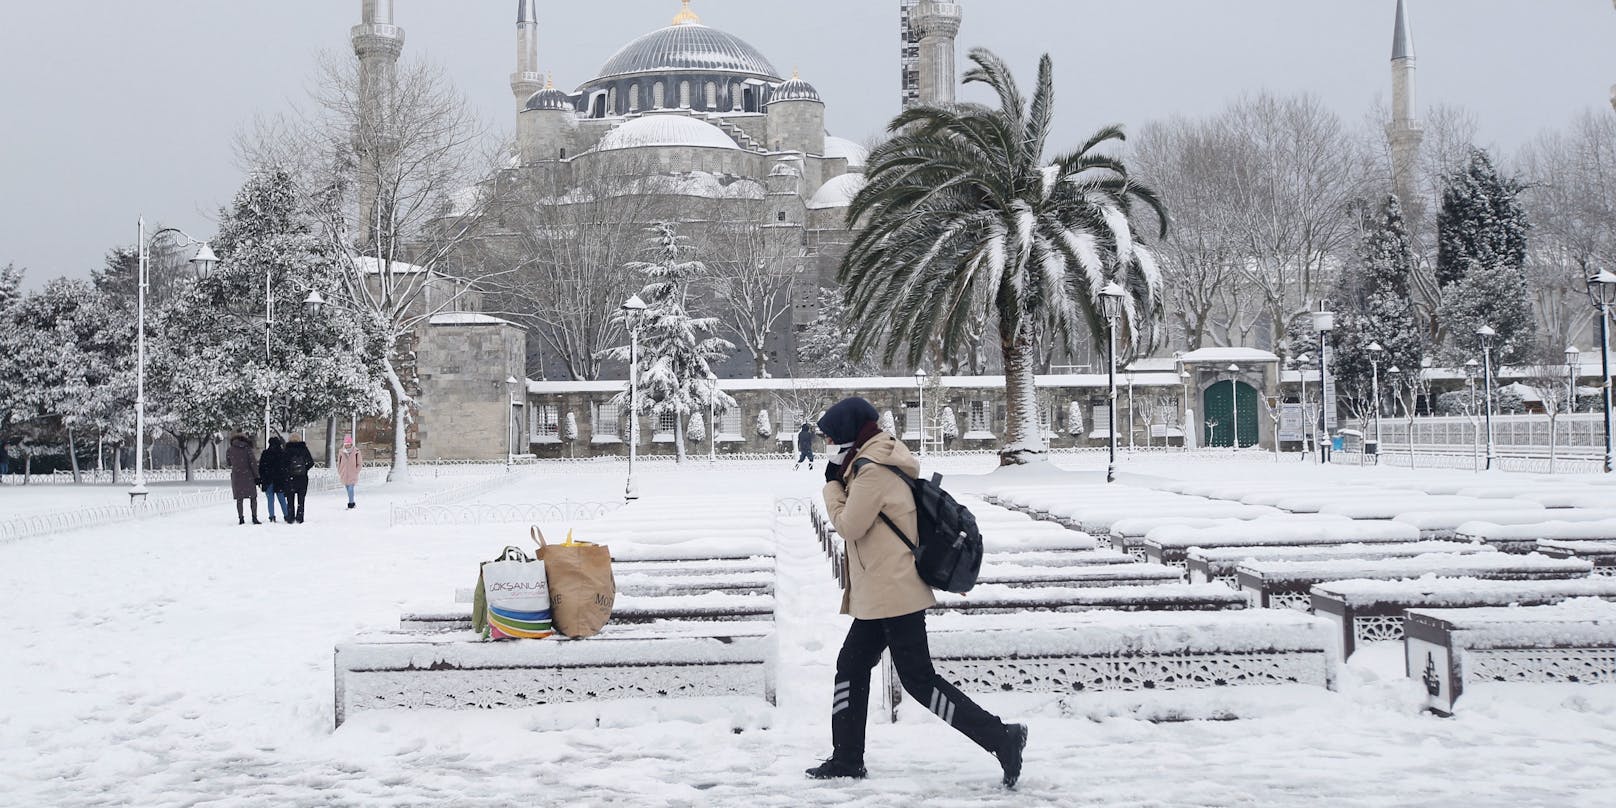 Ein ungewöhnliches Bild: Der Park rund um die berühmte Blaue Moschee in Istanbul liegt unter einer dicken Schneedecke.